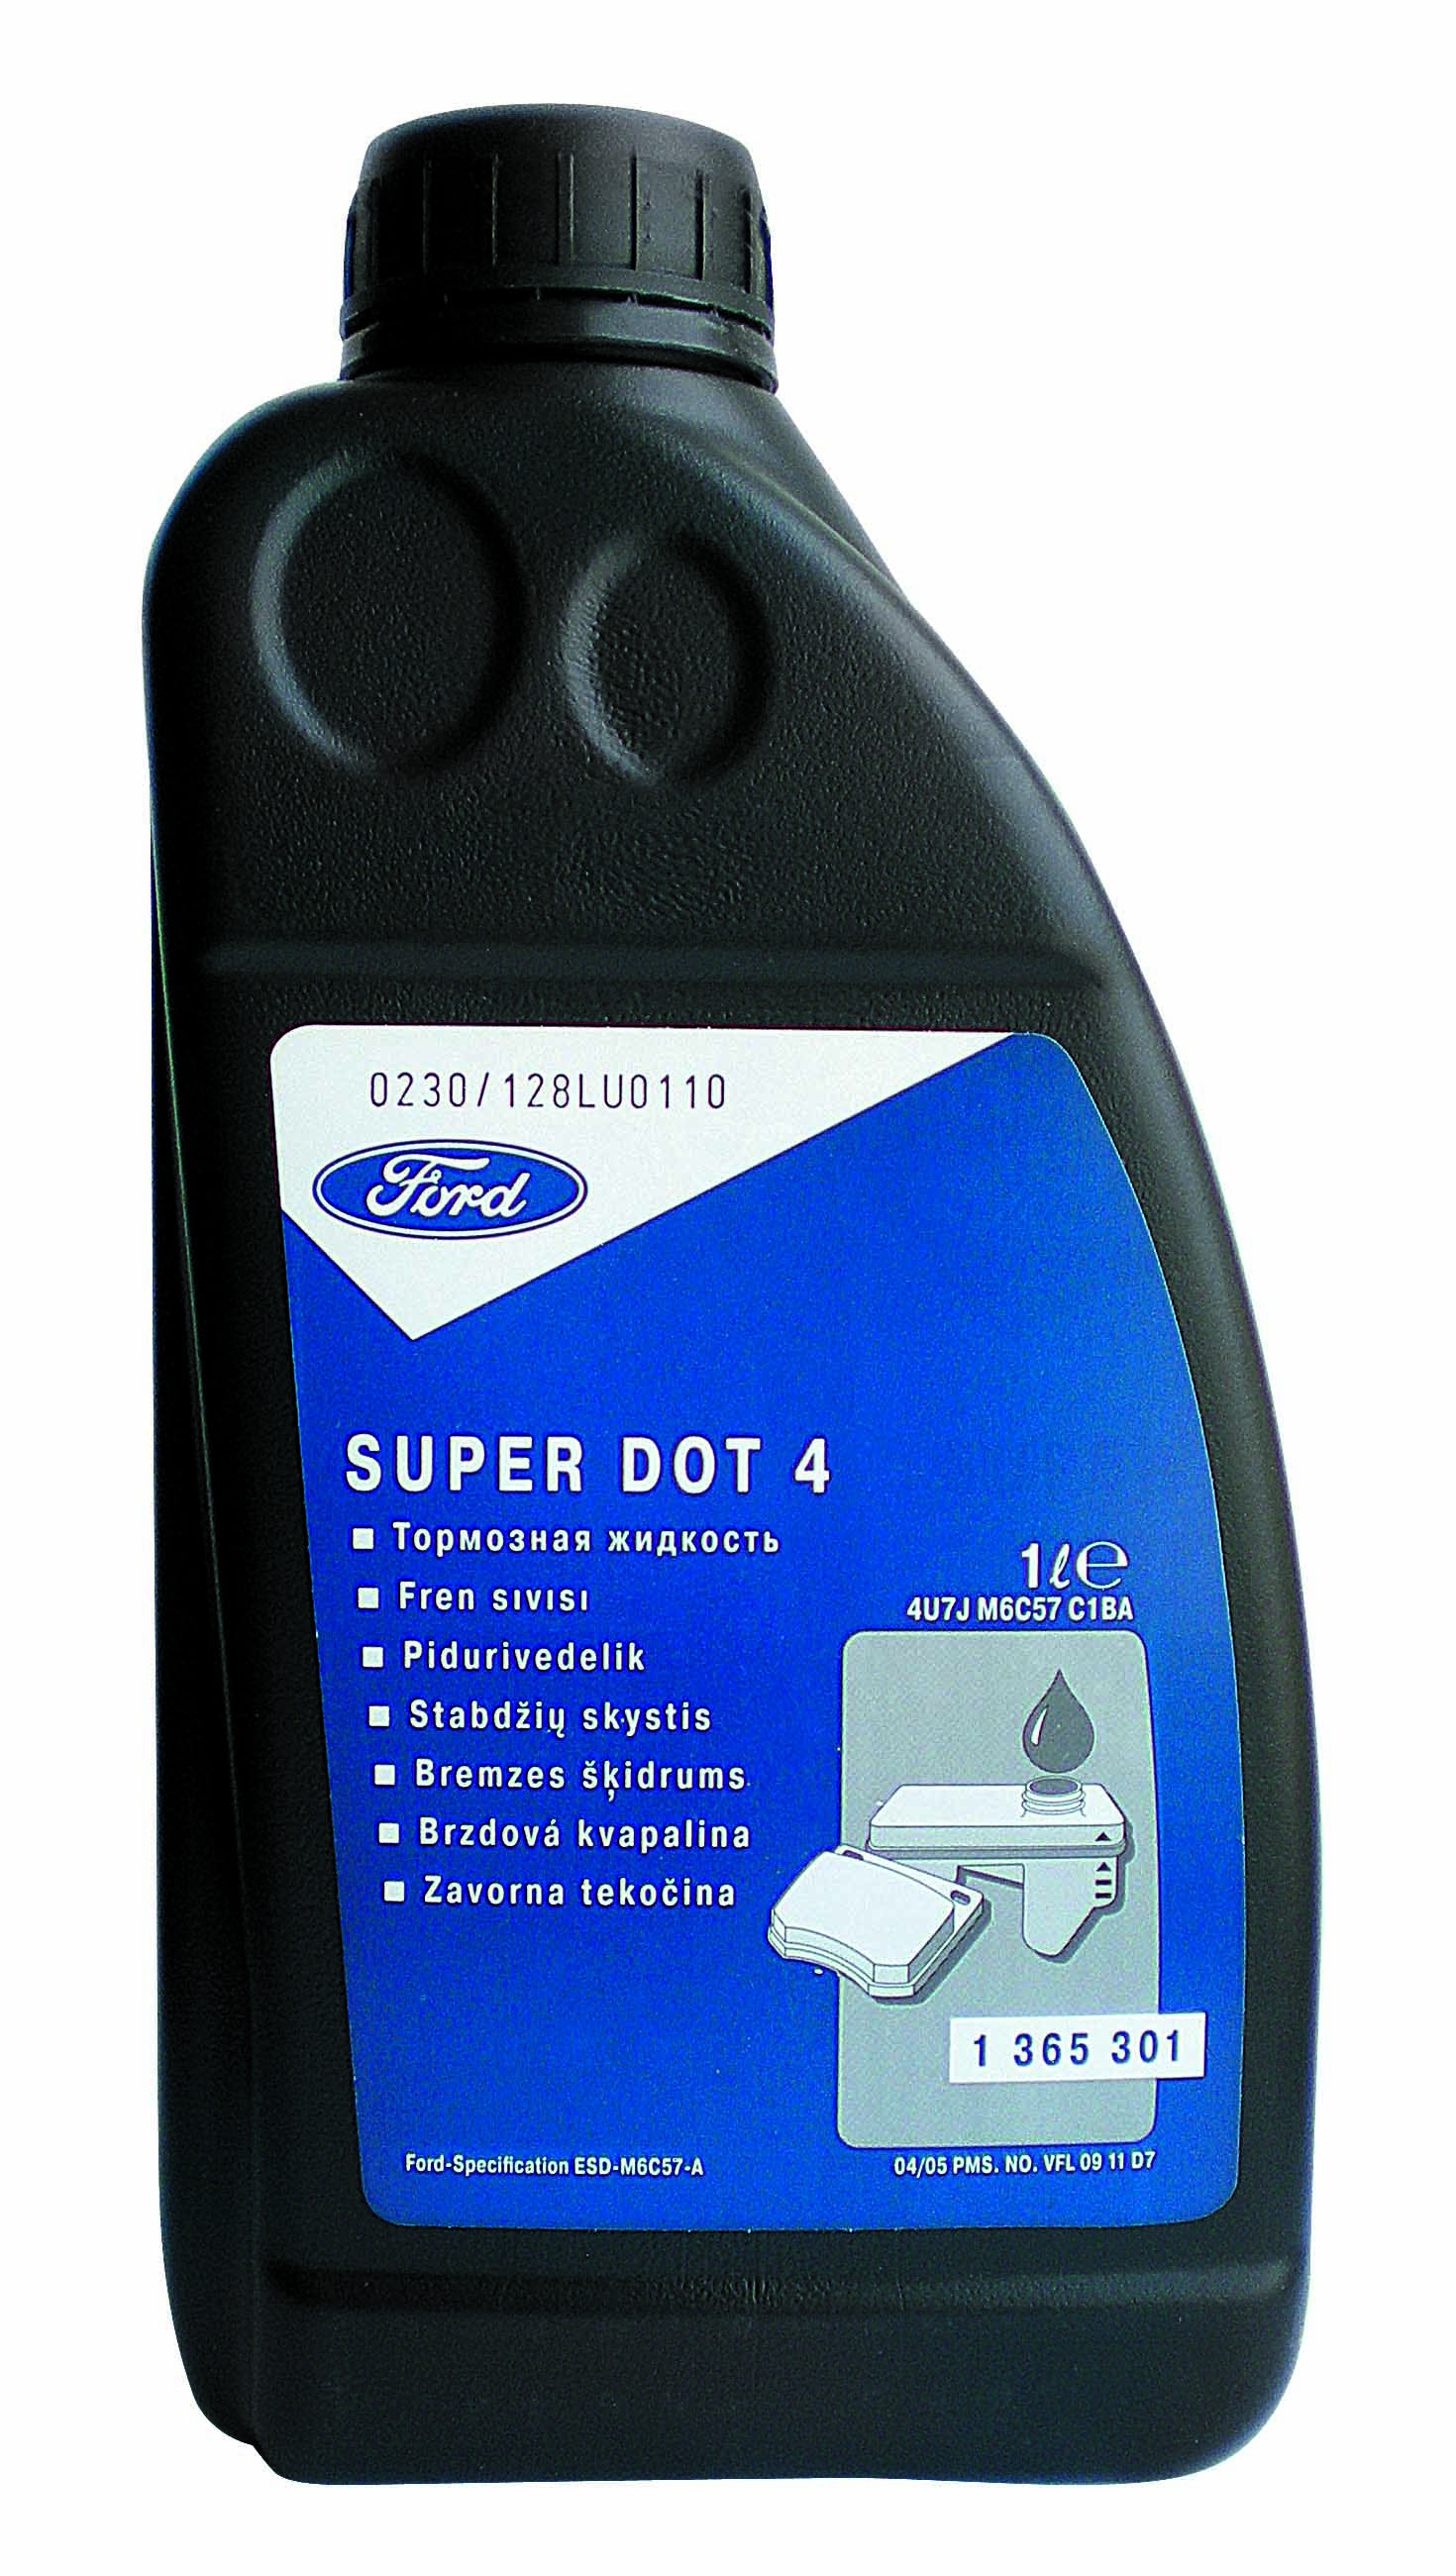 Купить запчасть FORD - 1365301 Тормозная жидкость Super DOT 4, 1л